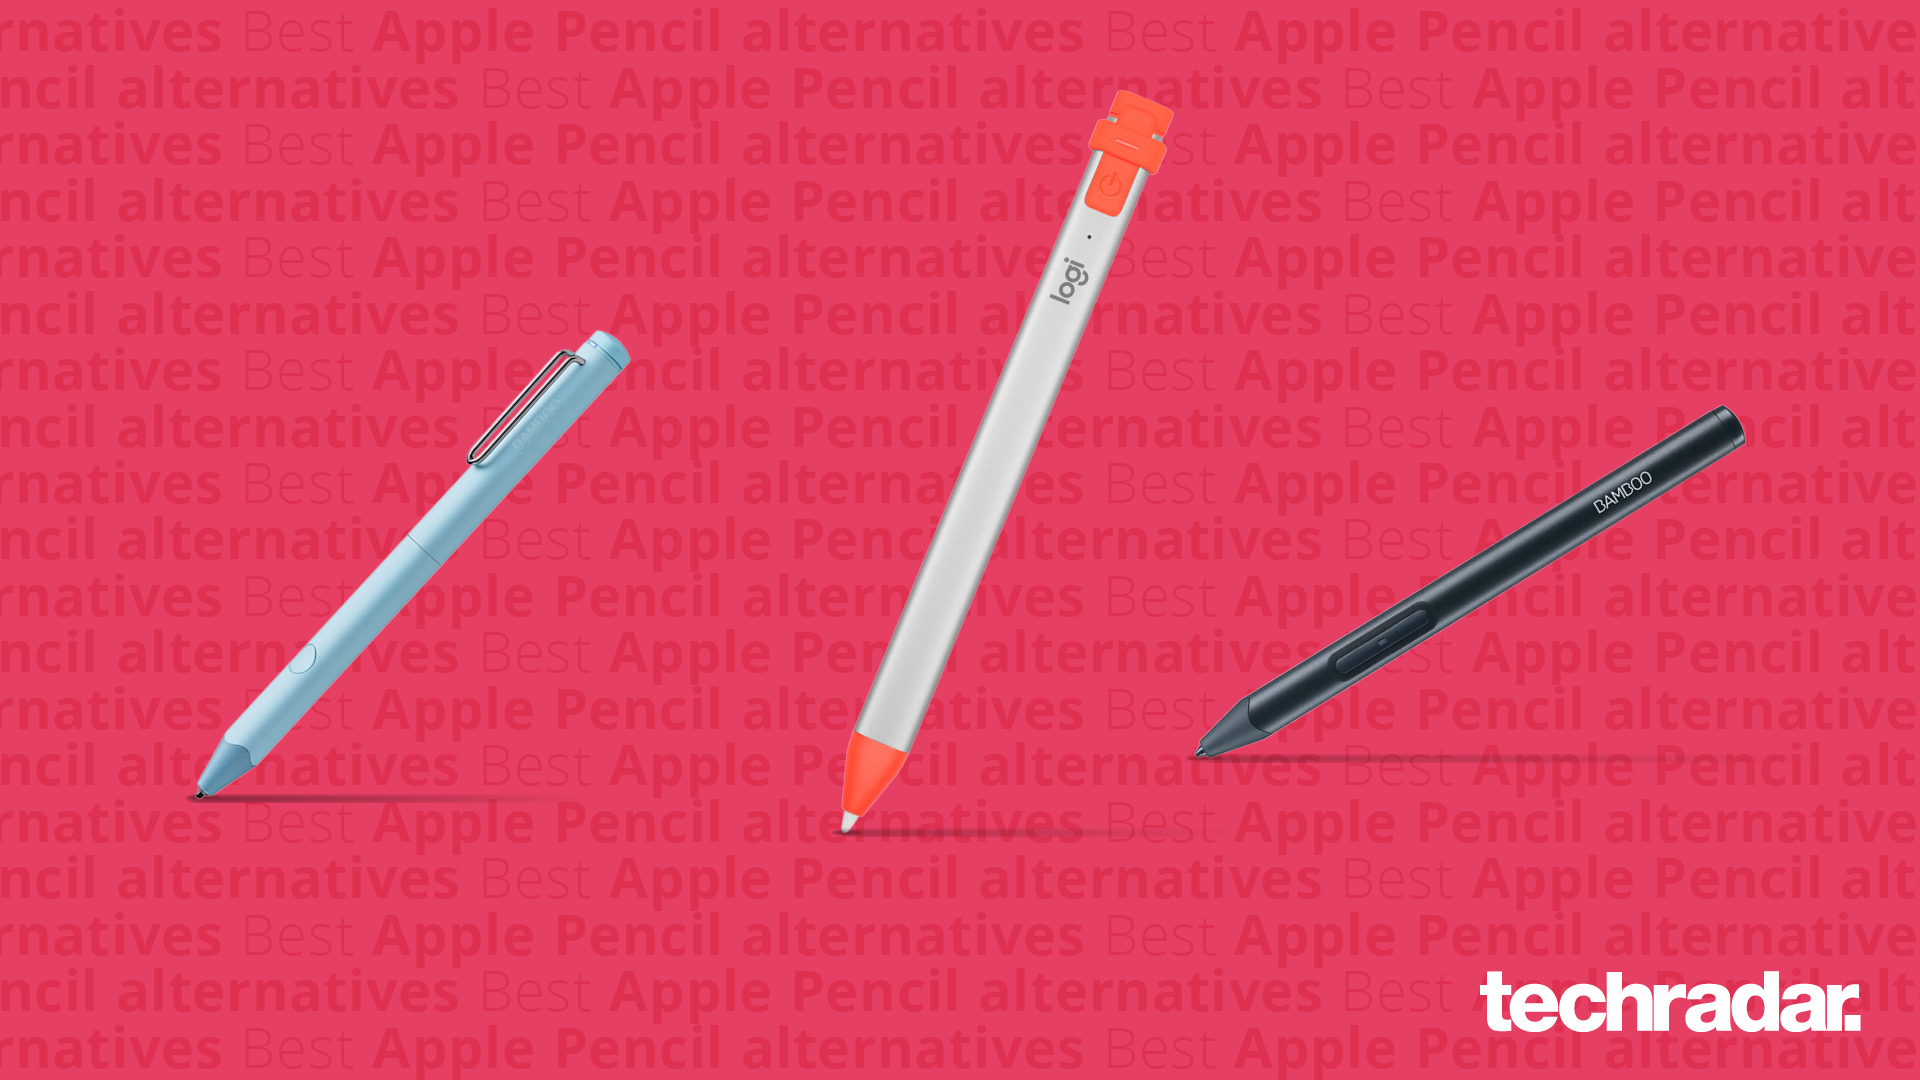 Apple Pencil 2 vs Apple Pencil 1 (pressure sensitivity changes